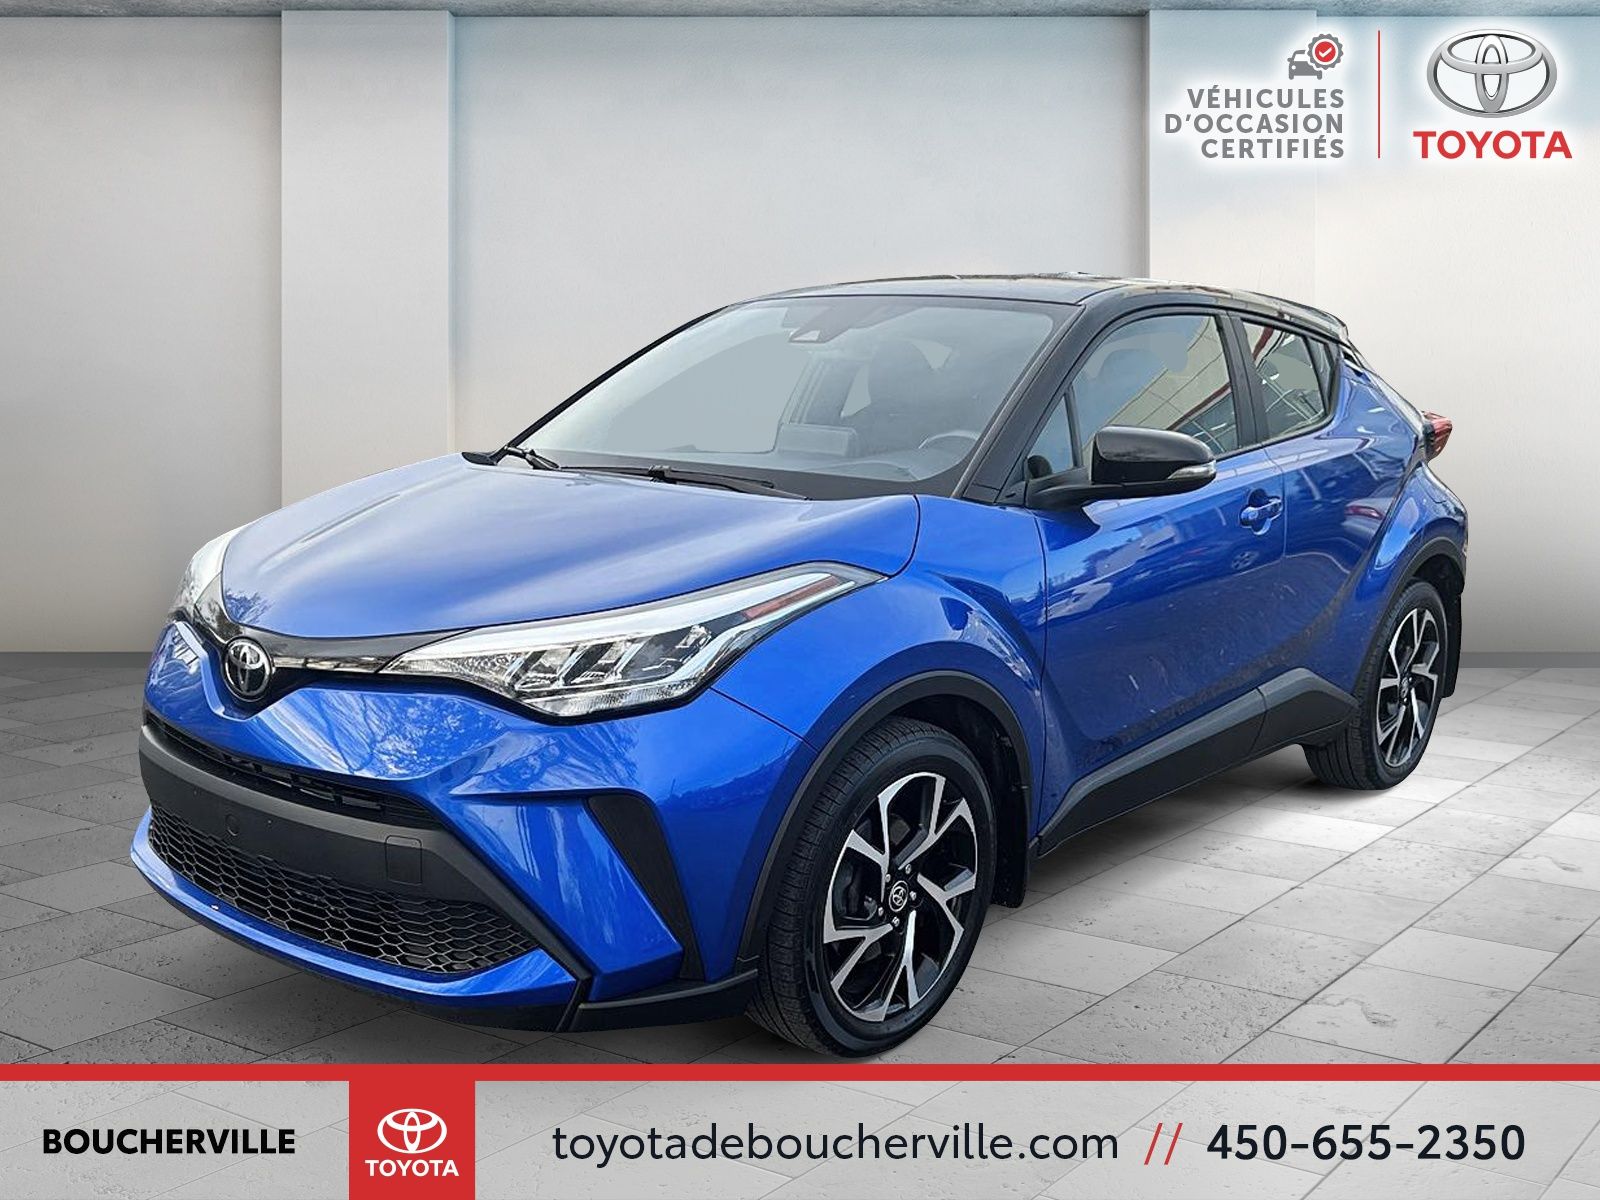 Véhicules d'occasion à Boucherville - Toyota de Boucherville